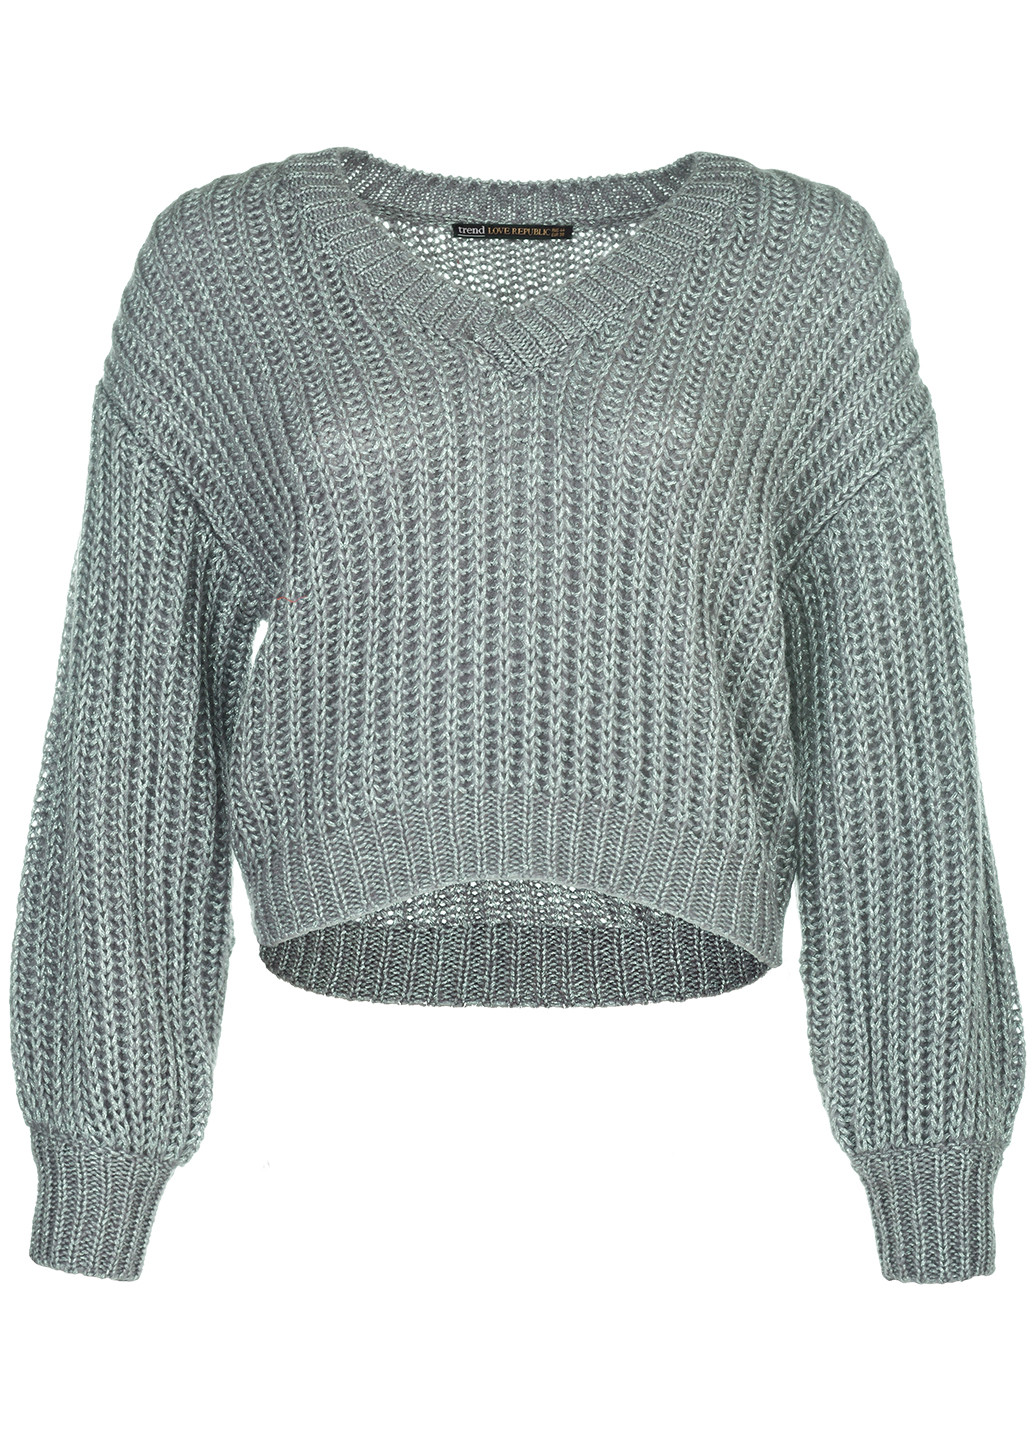 Мятный зимний джемпер пуловер LOVE REPUBLIC